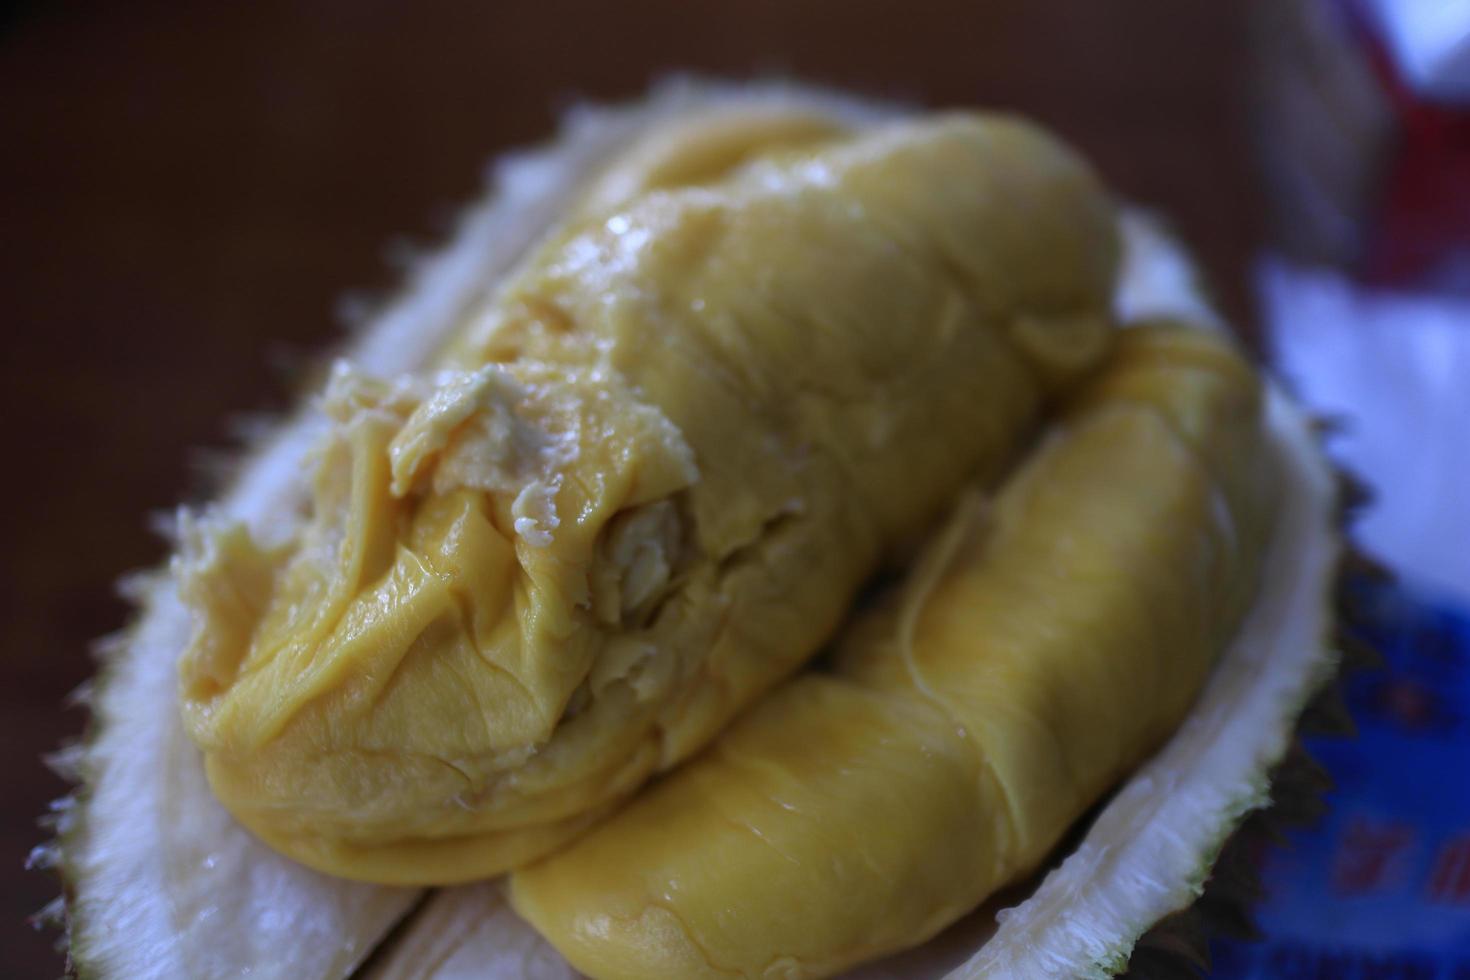 donnola durian, durian musang, uno dei durian più costosi del sud-est asiatico, ha un buon sapore, un po' amaro e molto delizioso foto